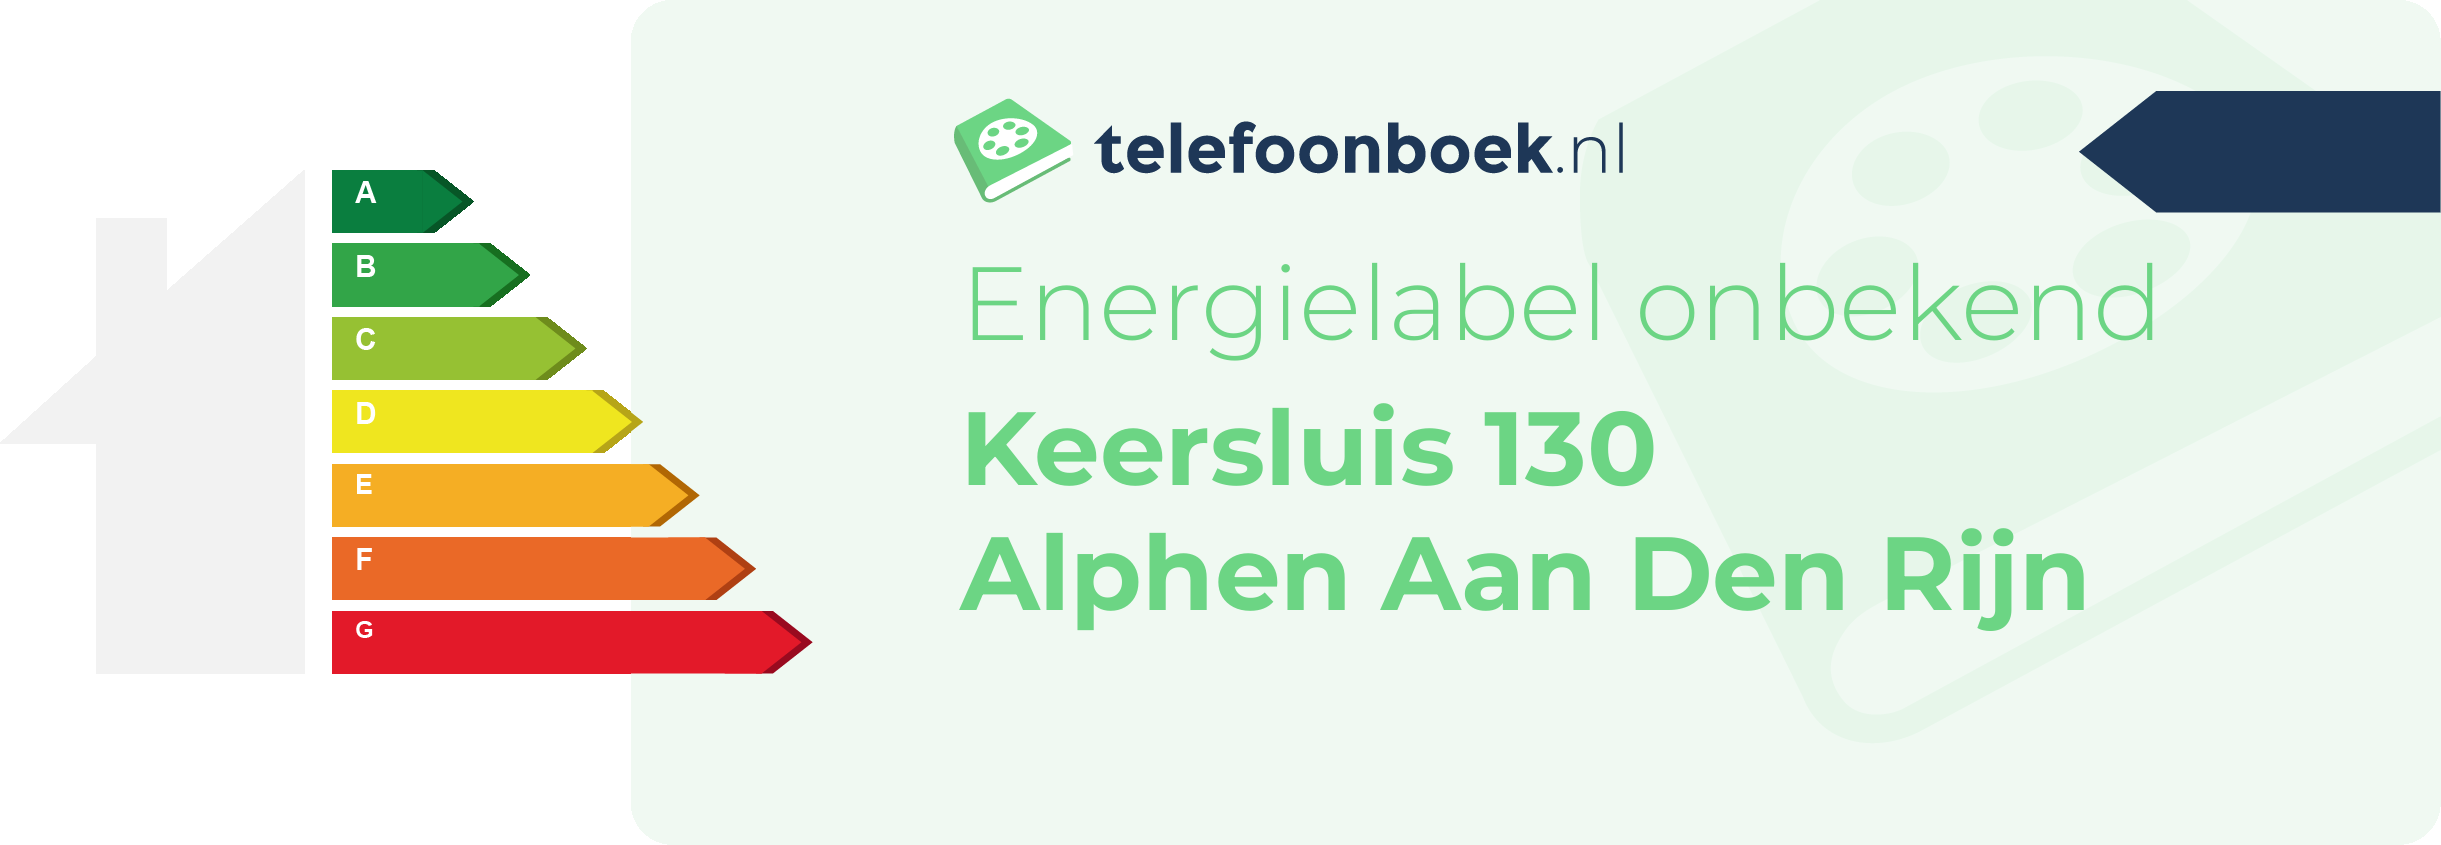 Energielabel Keersluis 130 Alphen Aan Den Rijn